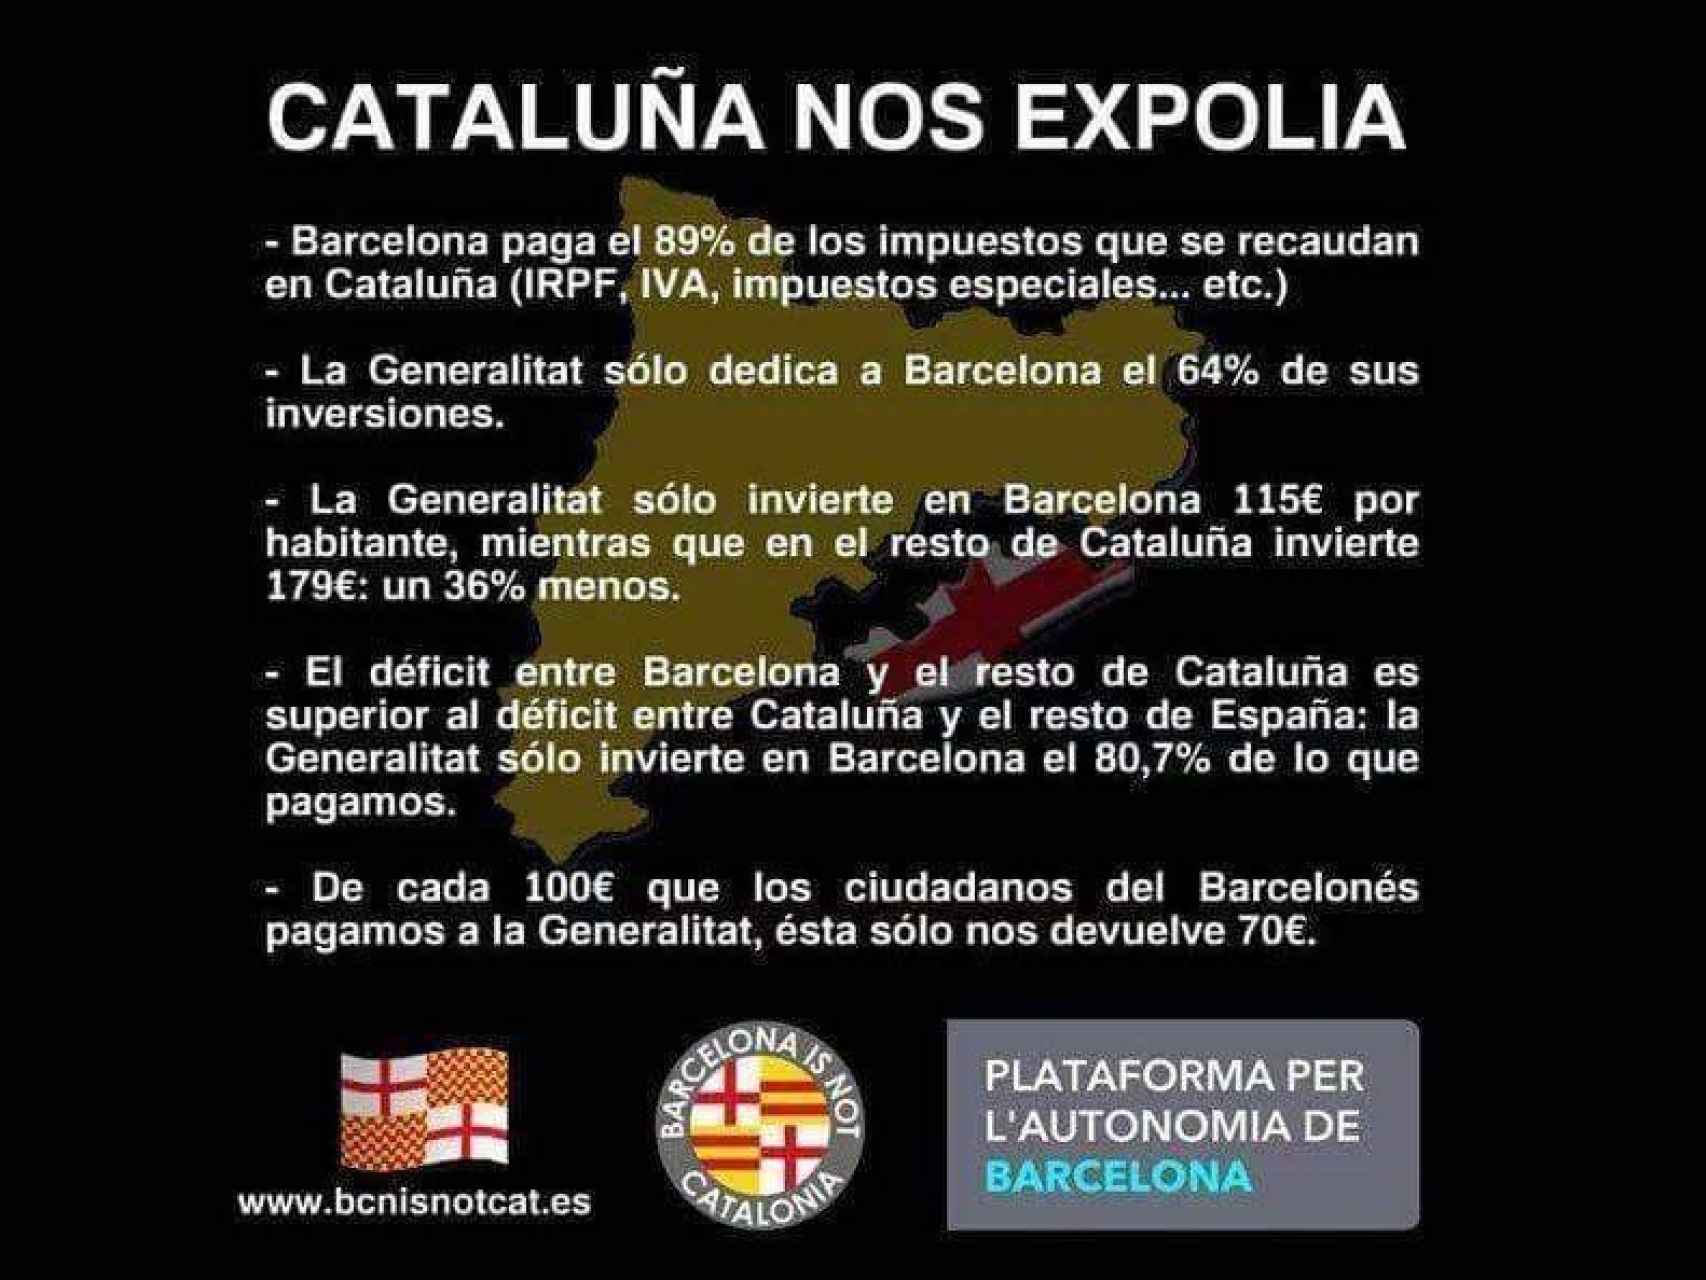 El expolio catalán a Barcelona es el principal argumento que esgrimen los independentistas barceloneses.